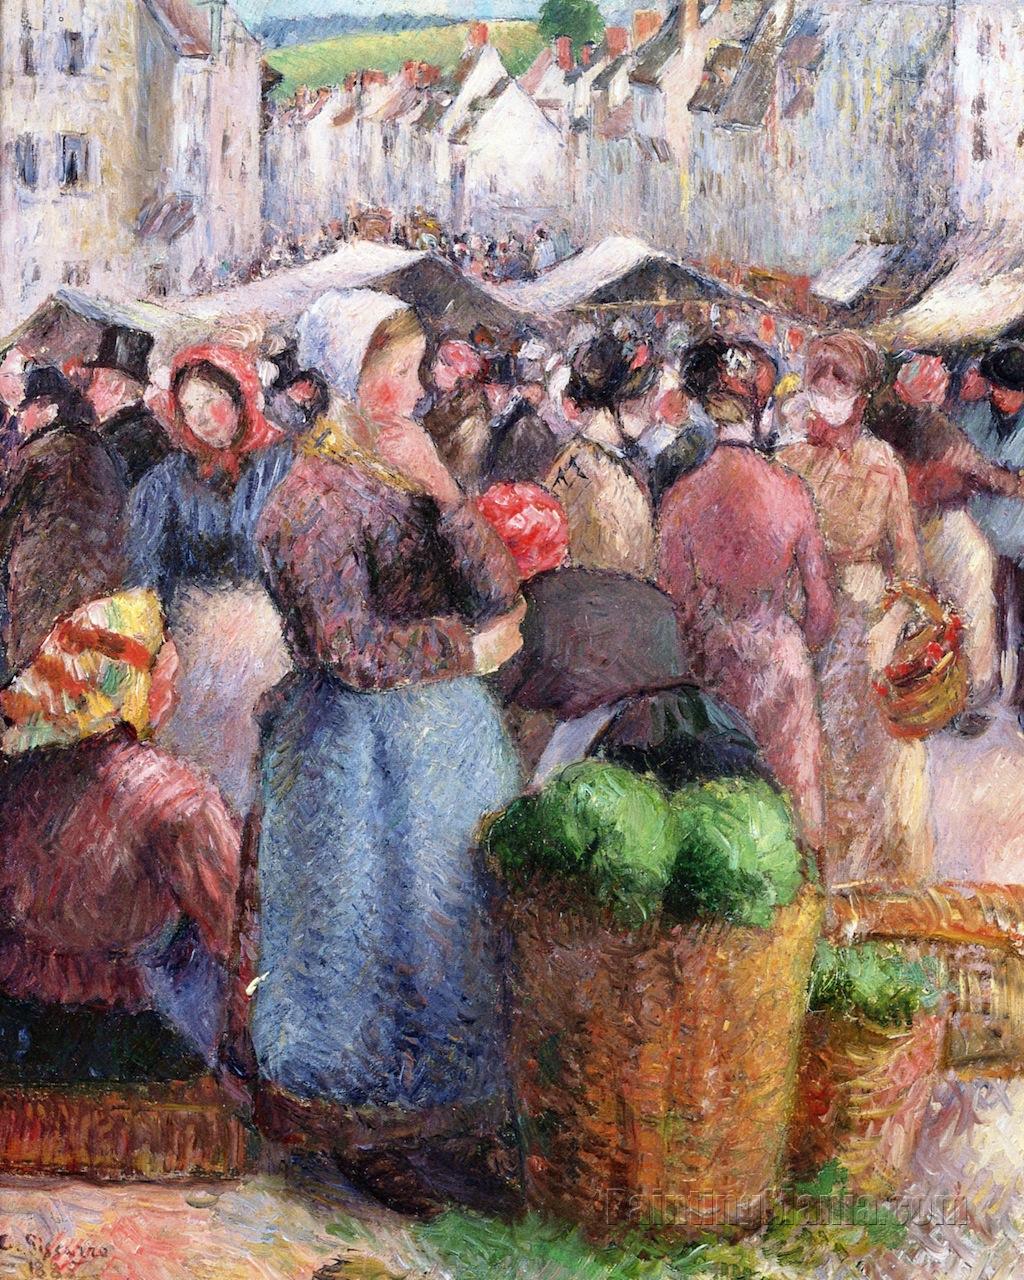 The Market at Gisors (Rue Cappeville)